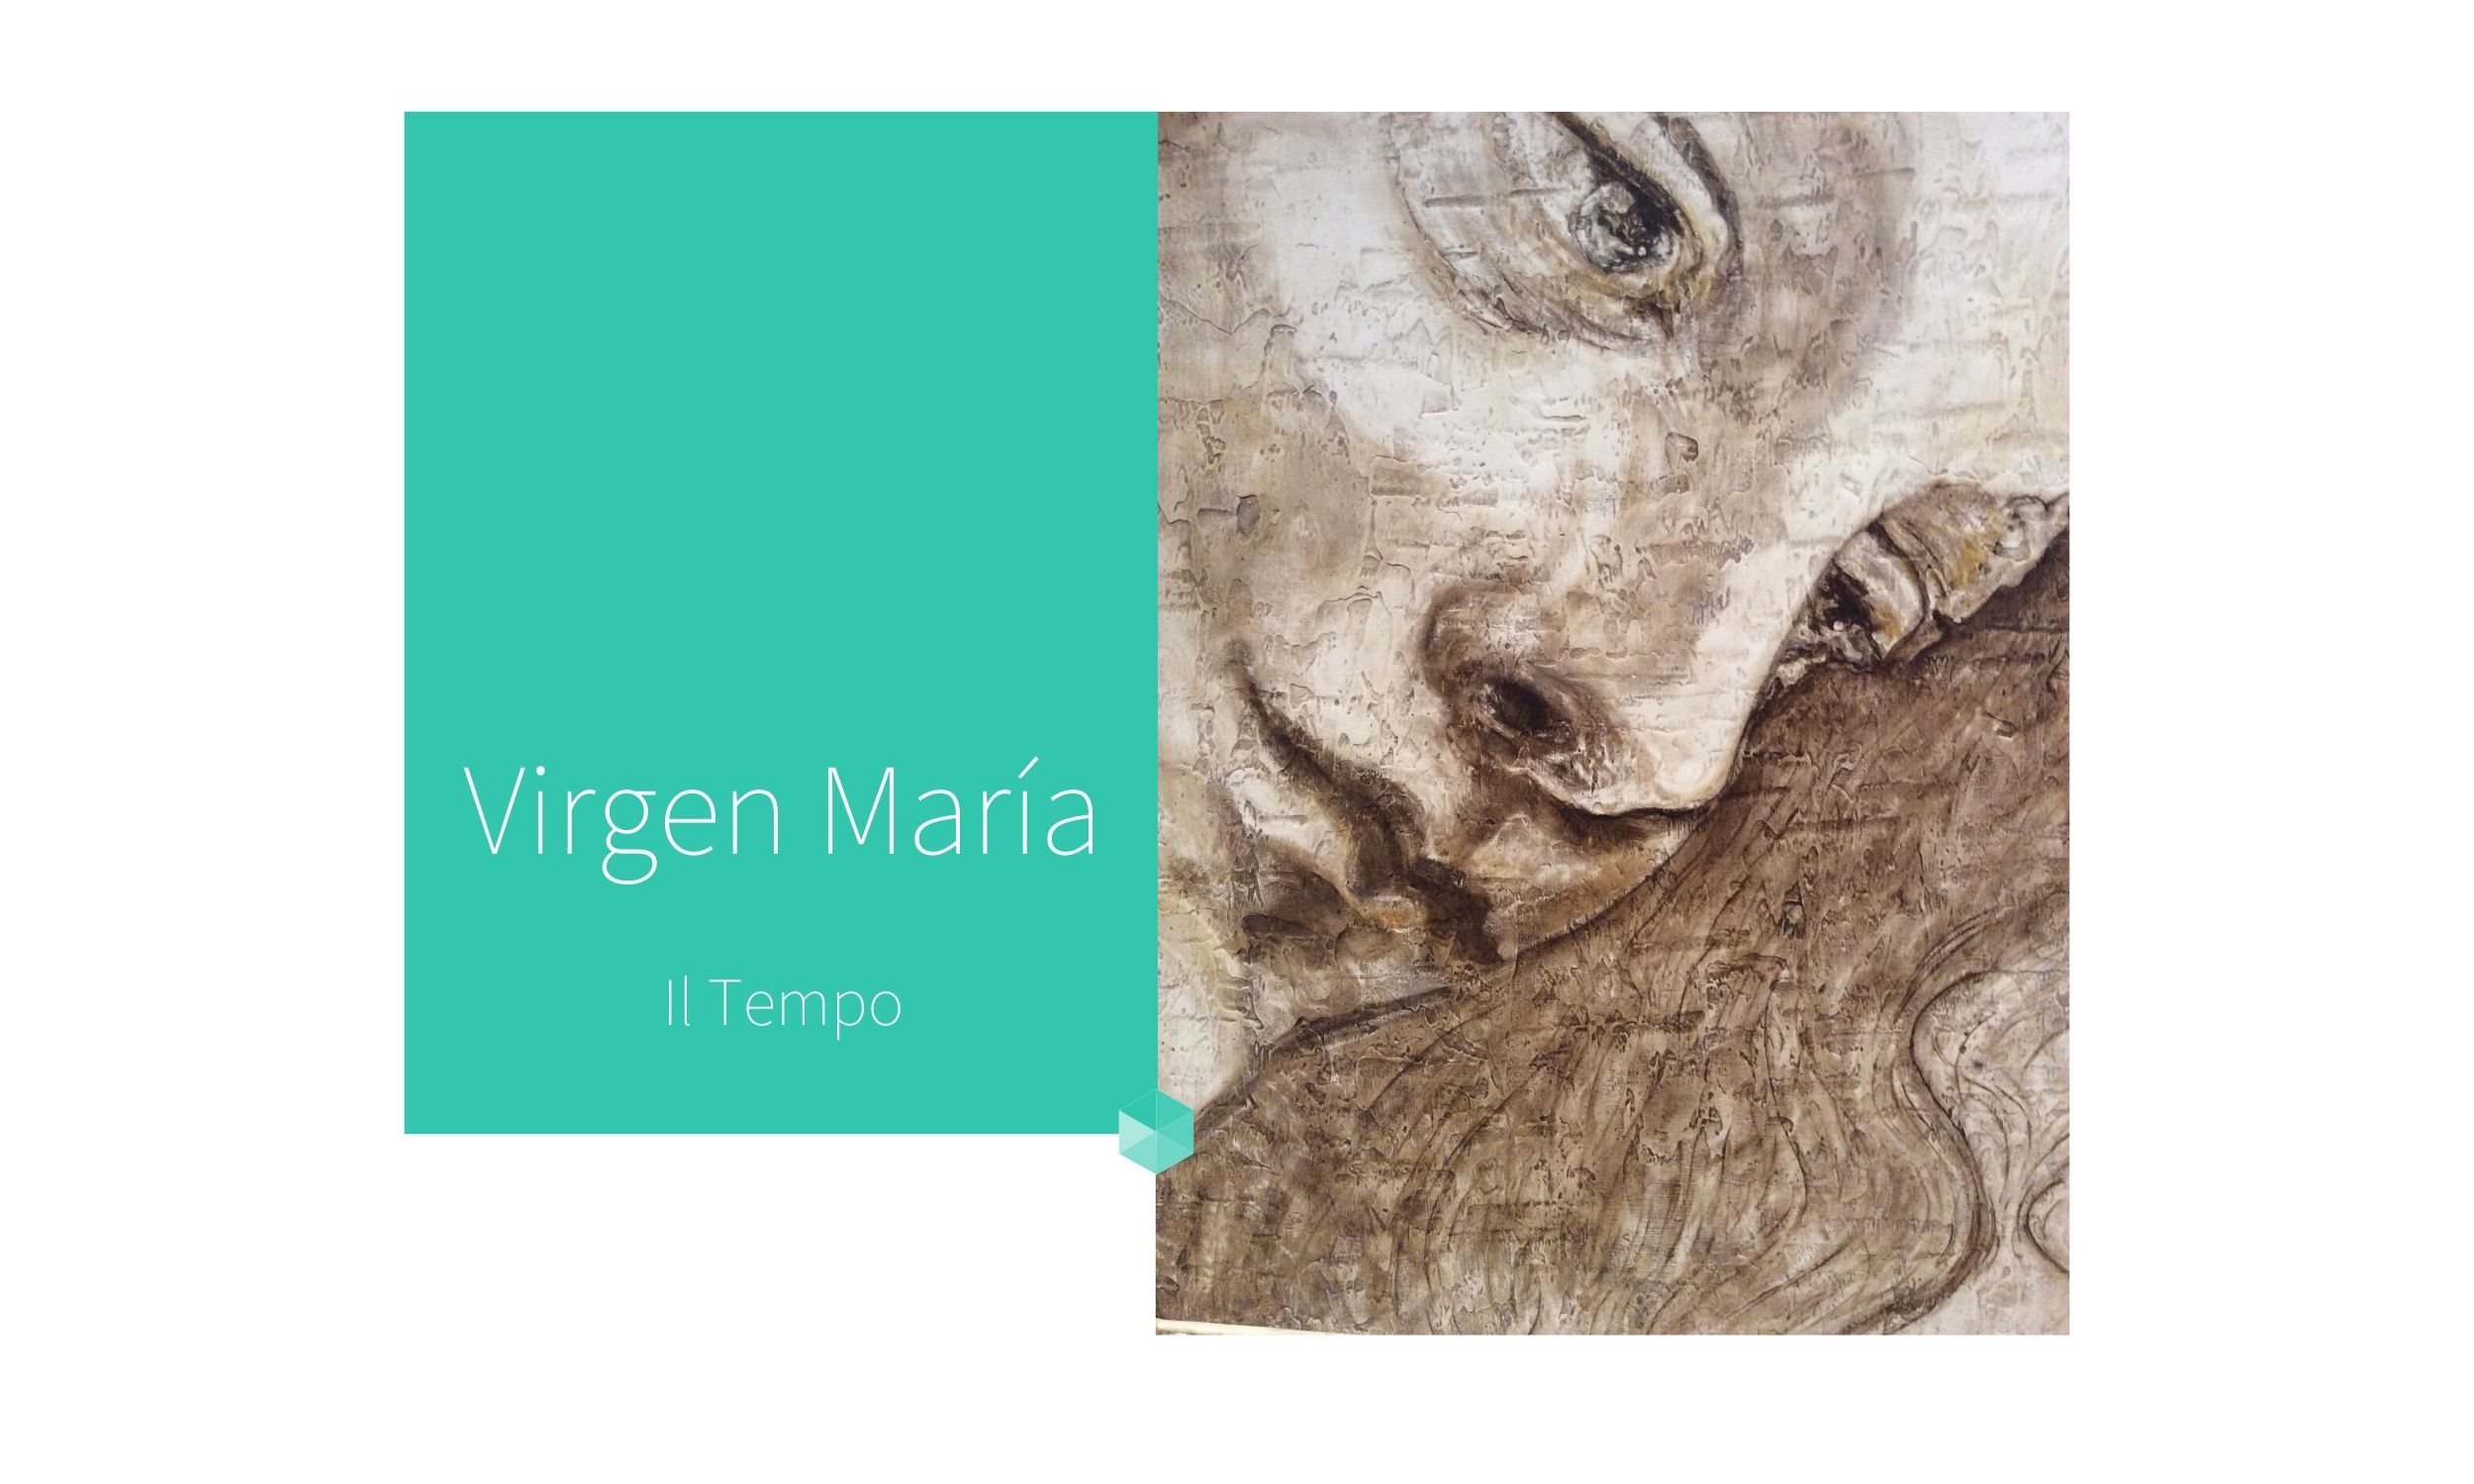 La Virgen Maria | por C.J.Ruiz
Colección Flor de Ziur | IL TEMPO